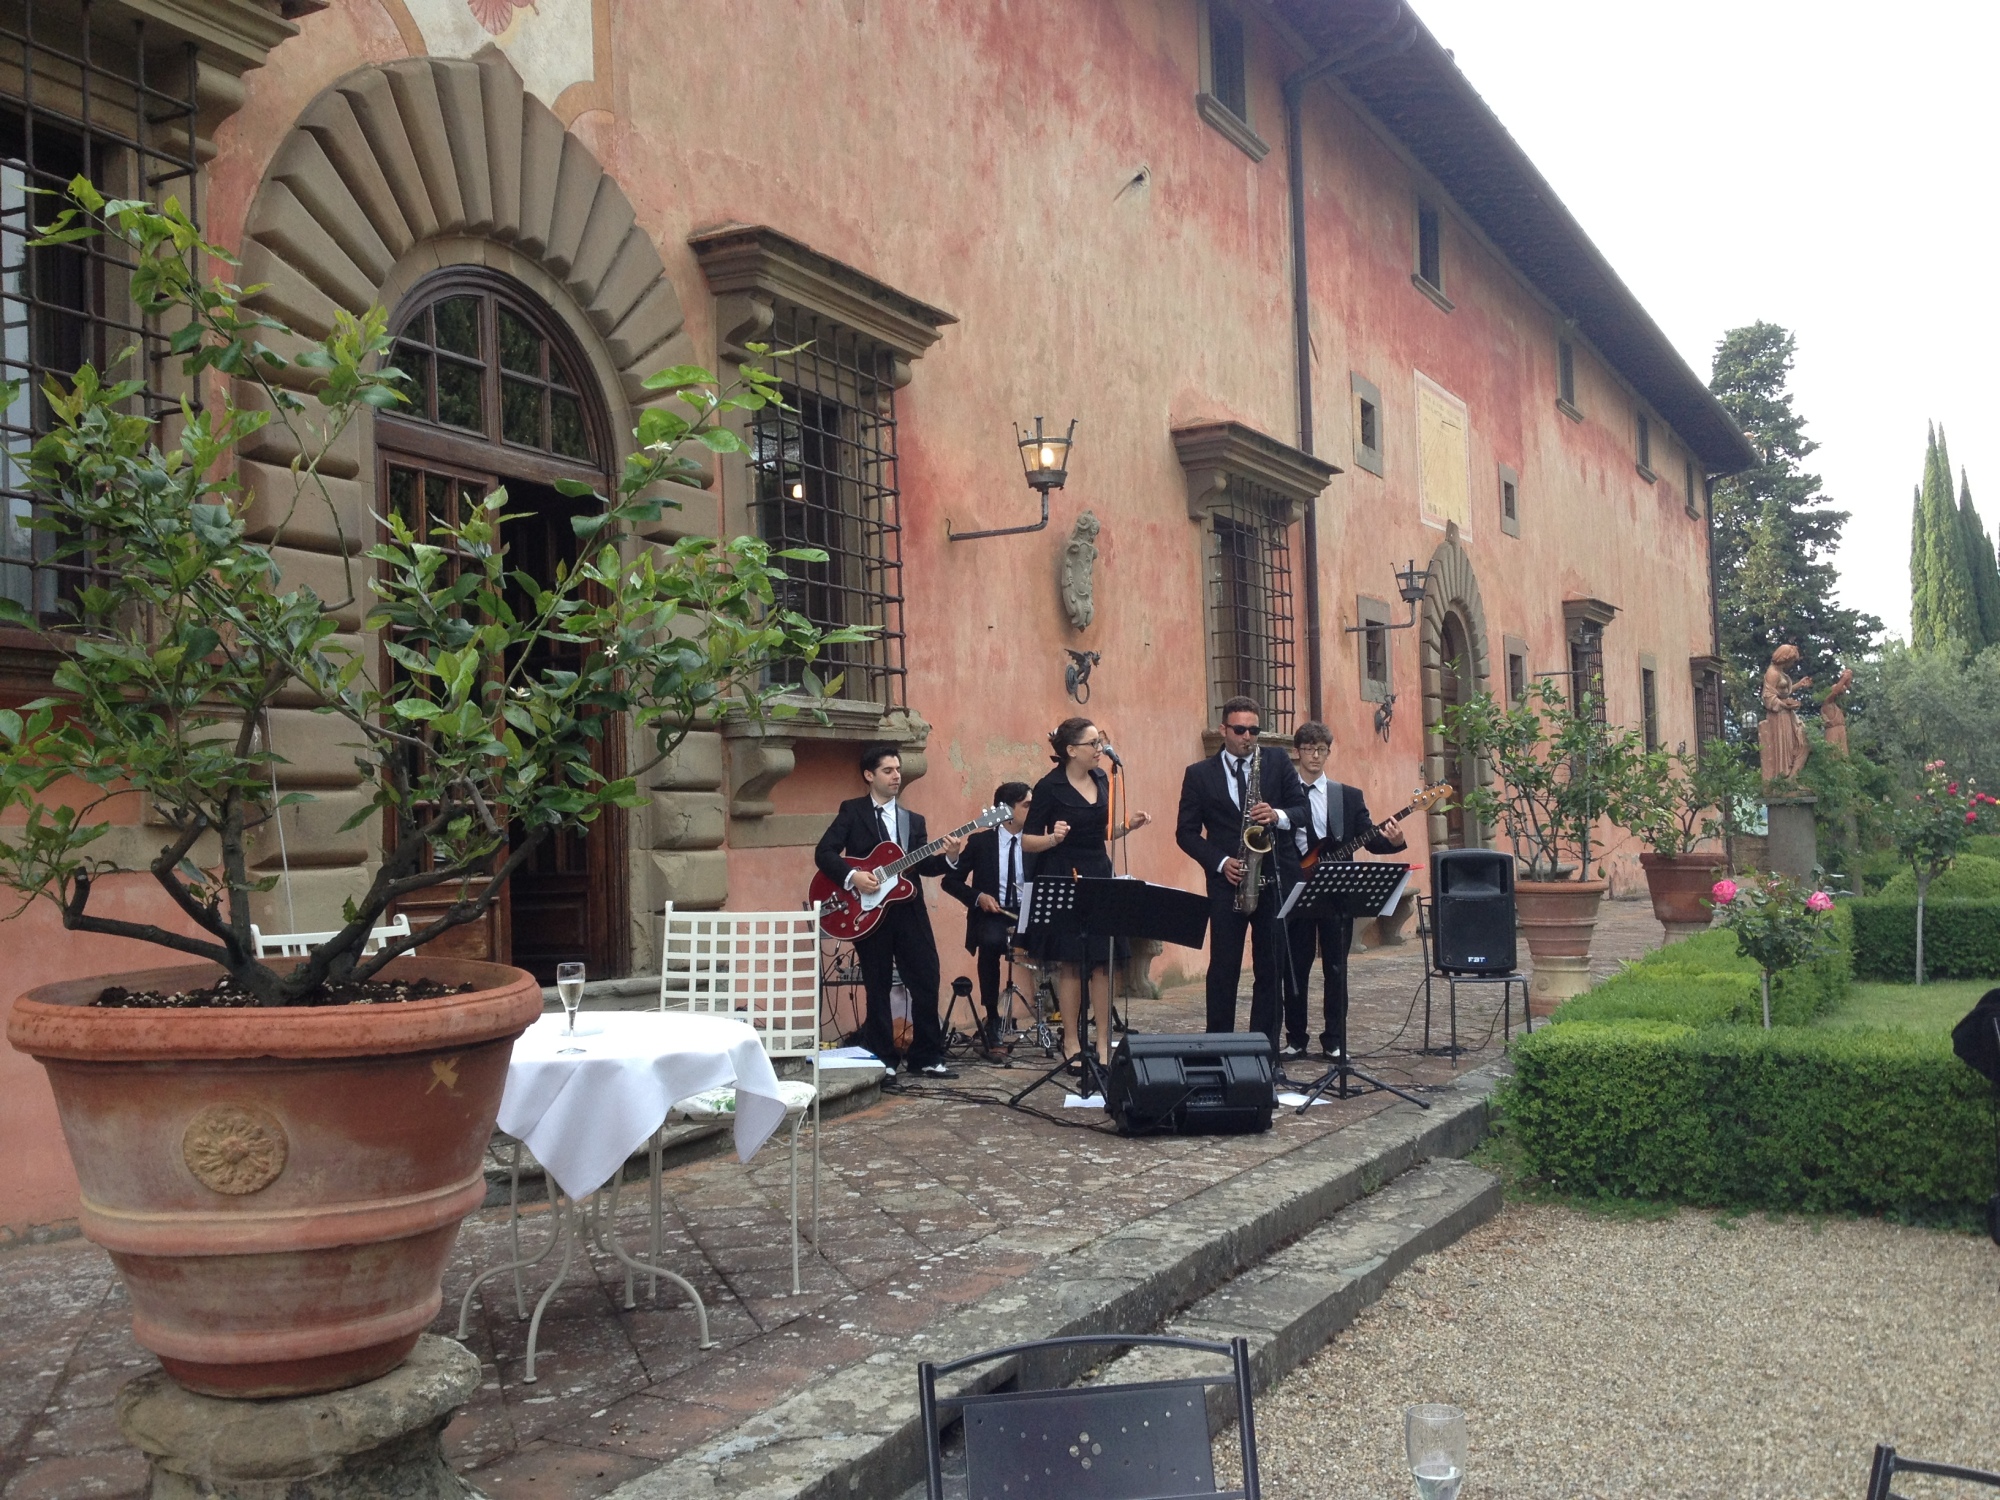 Villa Viamaggio - musicians from Firenze